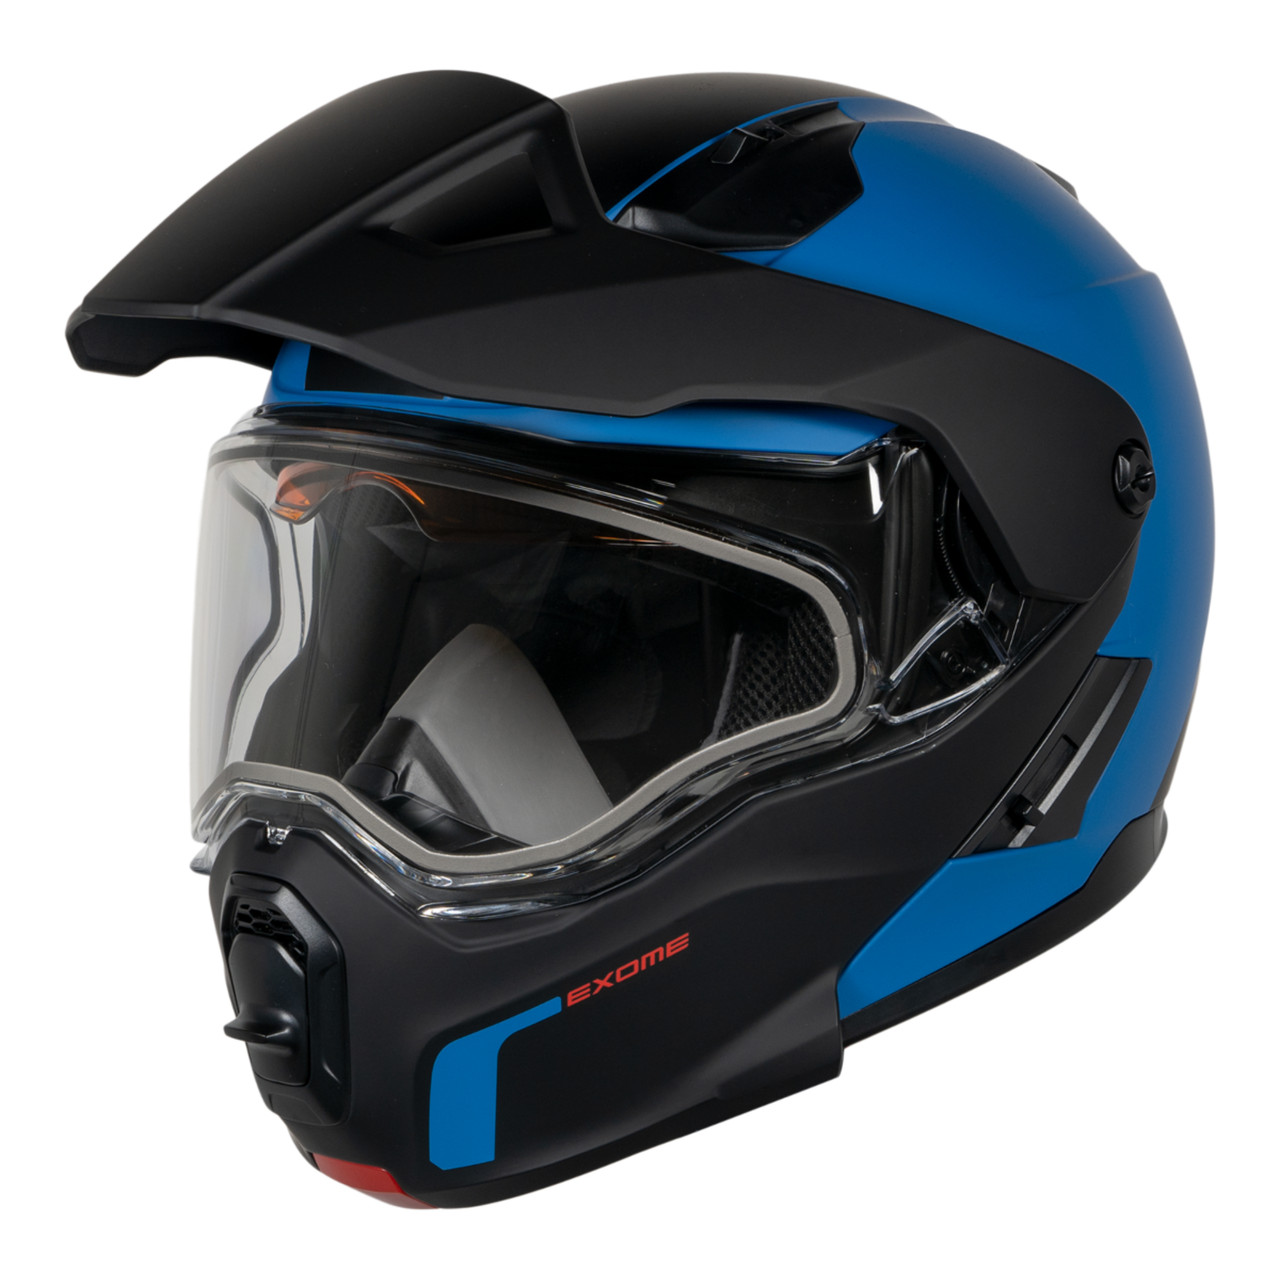 Ski-Doo New OEM Exome Sport Helmet (DOT), Unisex Large, 9290360982